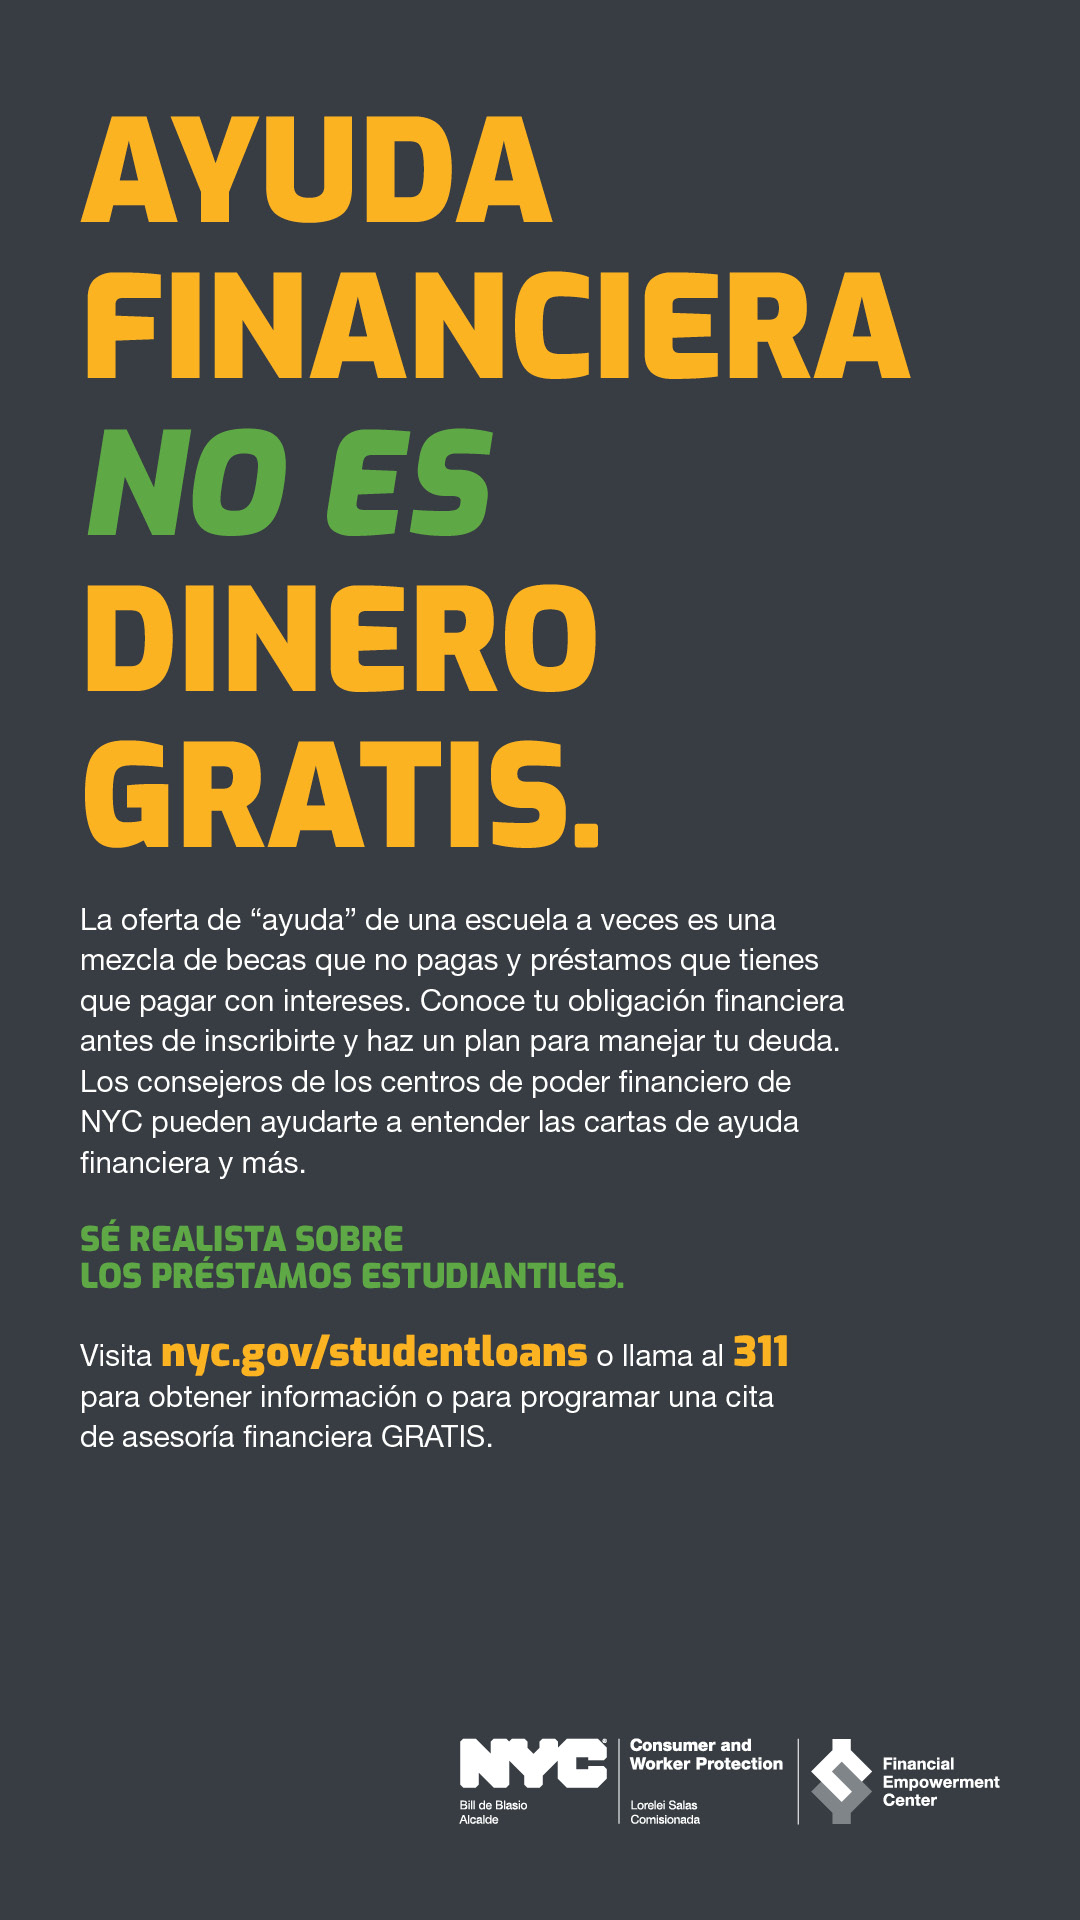 Ad with text AYUDA FINANCIERA NO ES DINERO GRATIS